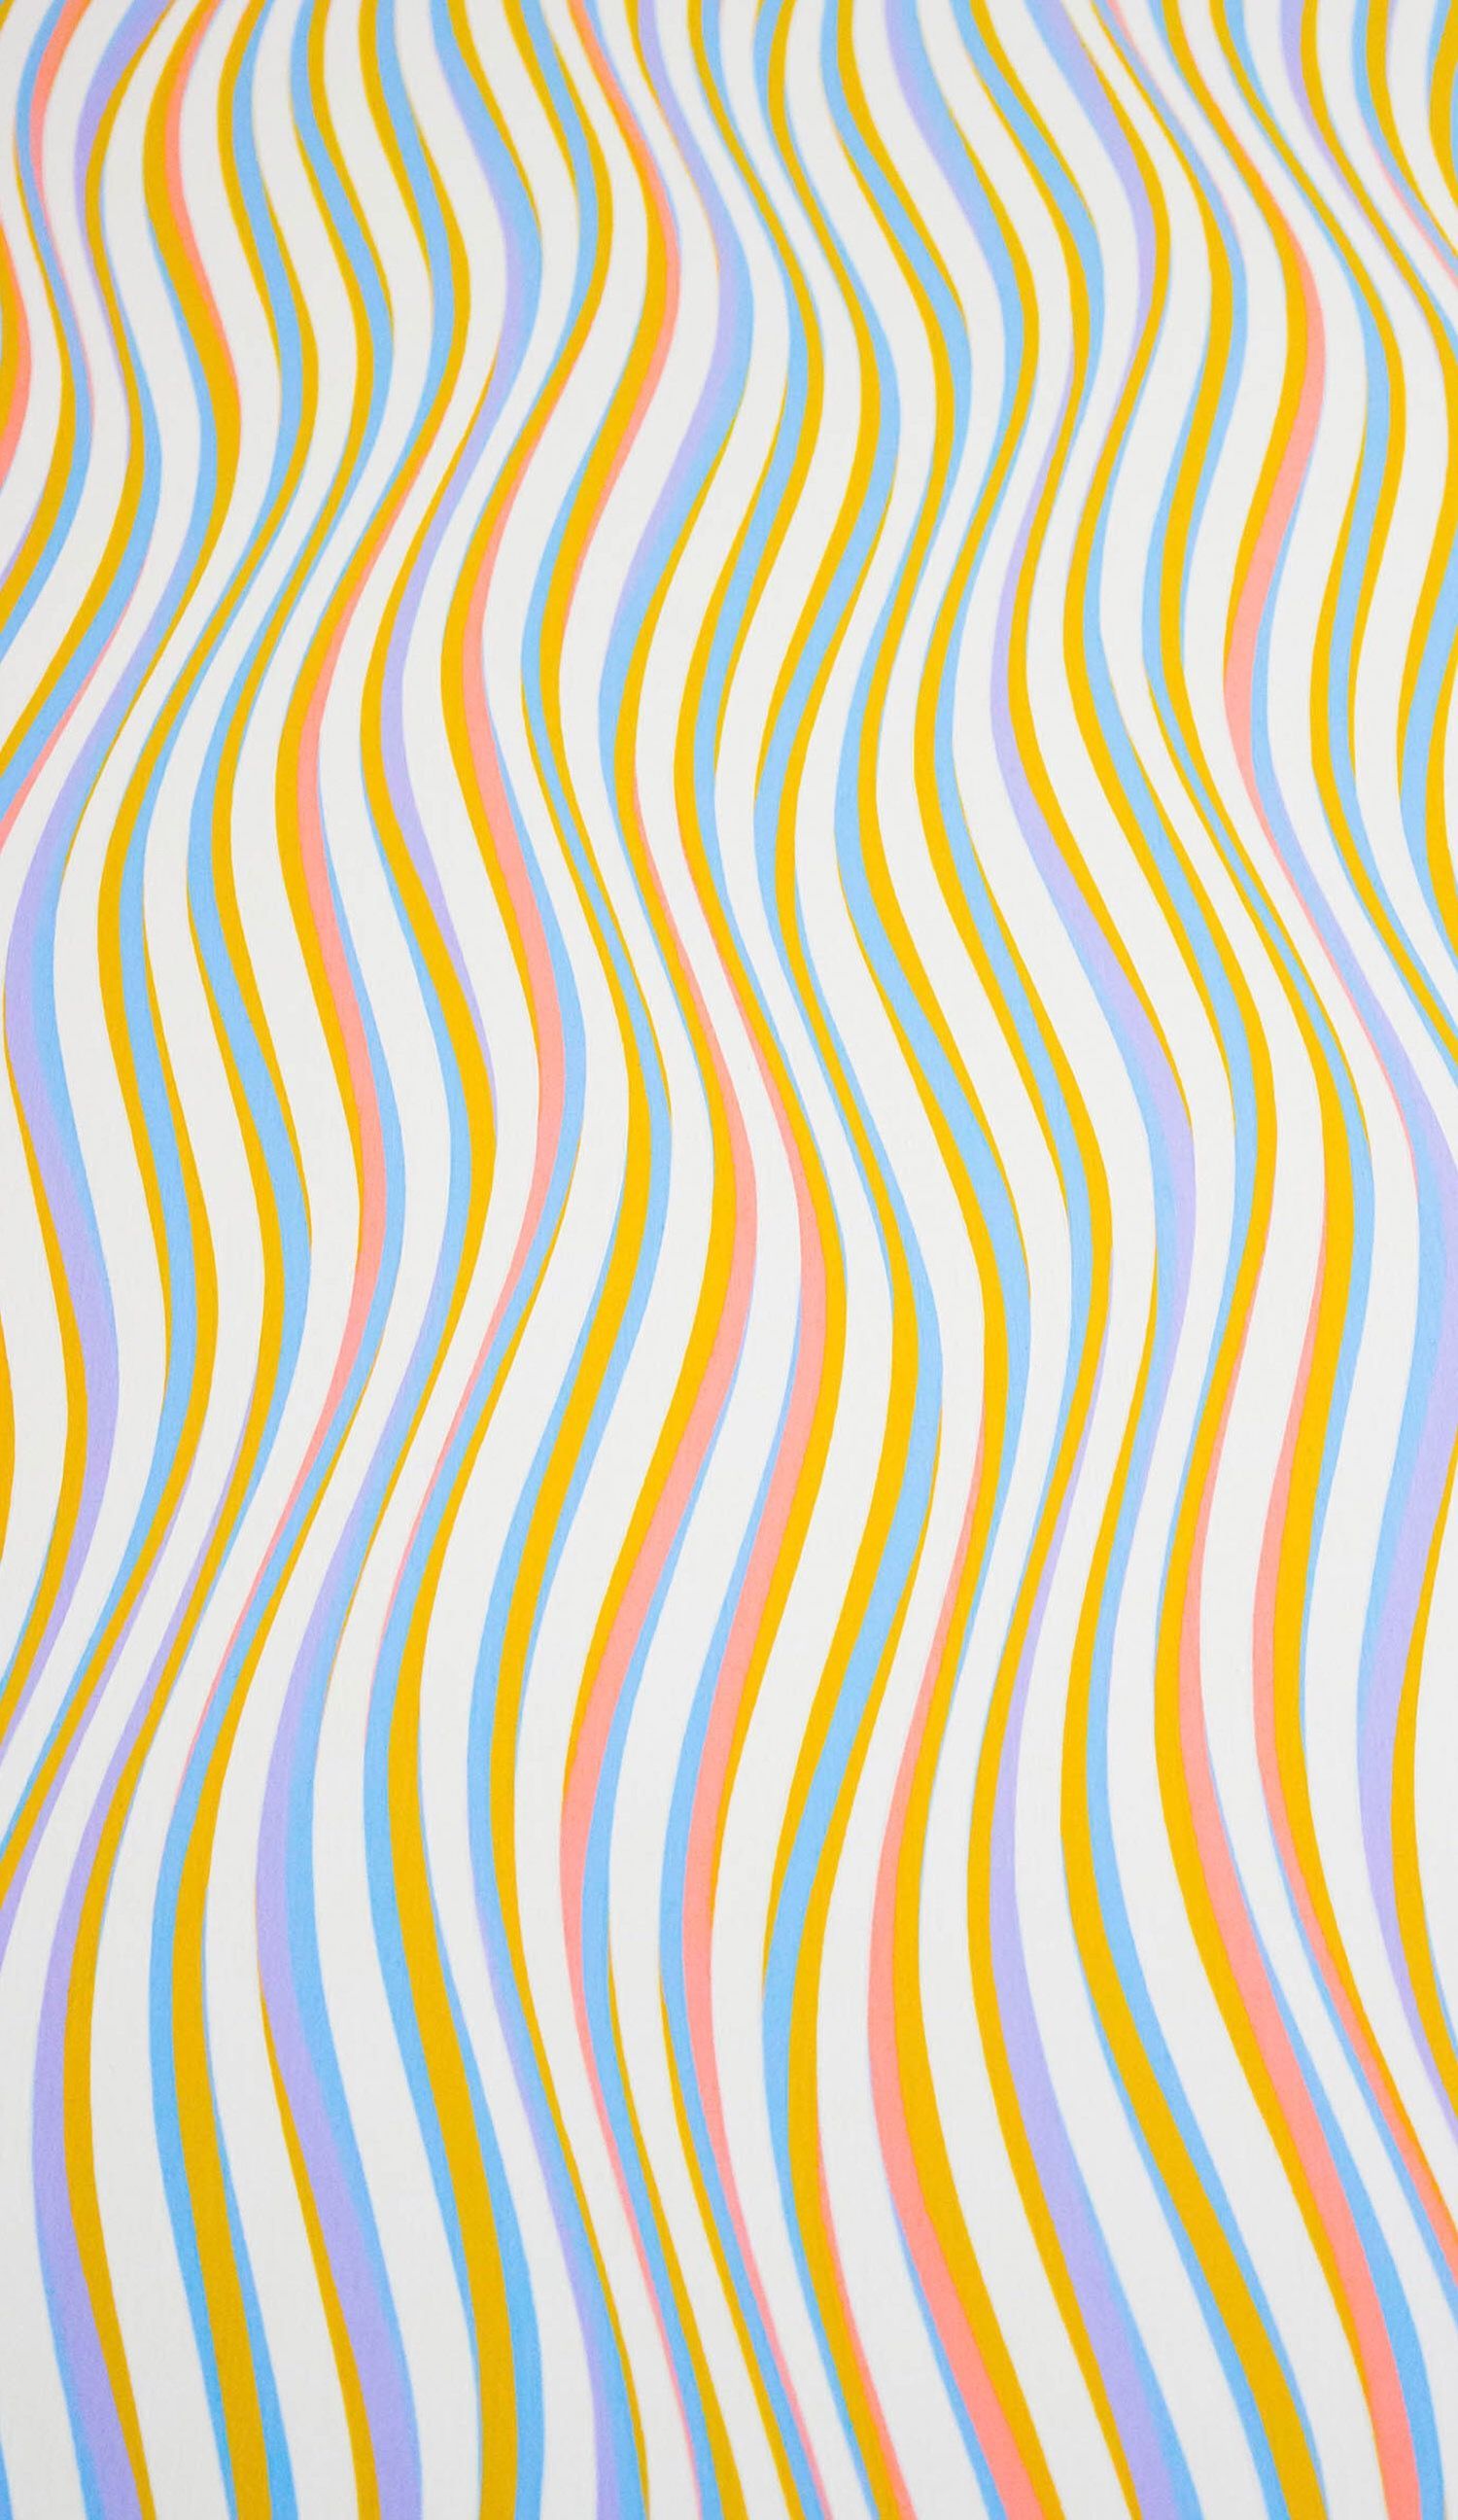  Streifen Hintergrundbild 1500x2592. Kathleen Waldrop On SWIRLY WAVY JUNK. Cute Patterns Wallpaper, Phone Wallpaper Patterns, IPhone Background Wallpaper